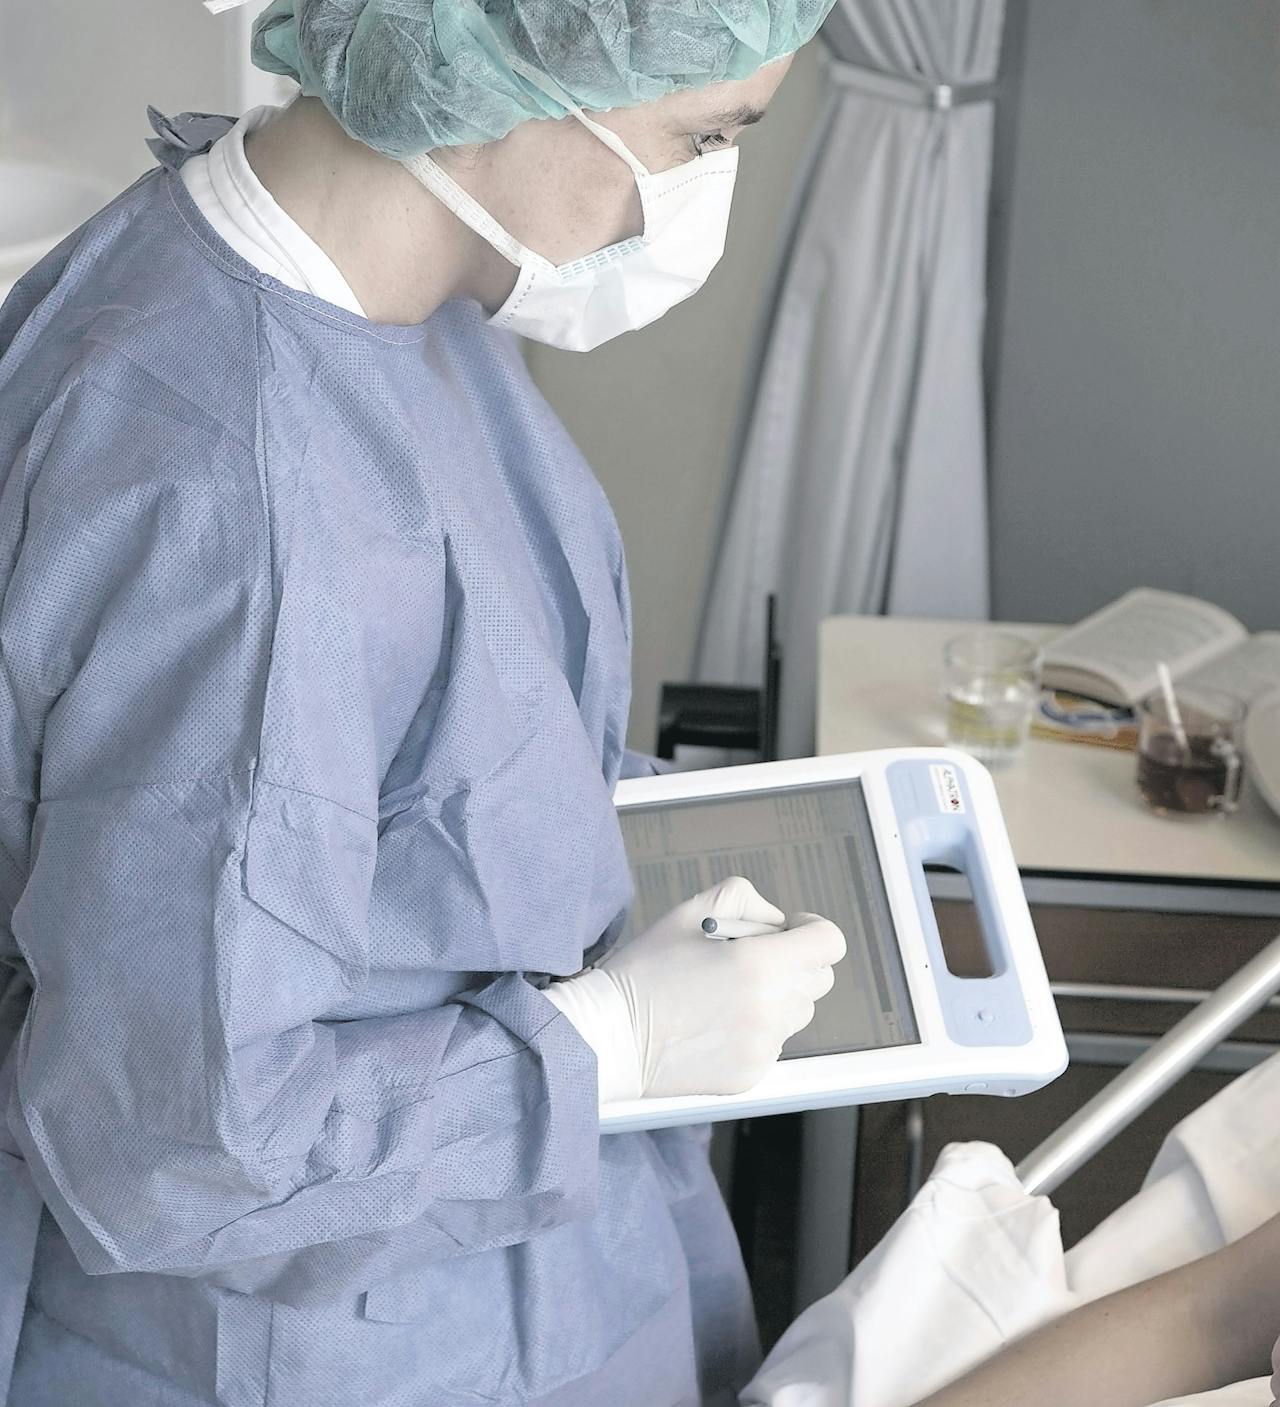 Bij een patiënte met een MRSA-besmetting wordt een anamnese afgenomen. De informatie wordt op een digitaal palet genoteerd en direct aan het elektronisch patiëntendossier toegevoegd.